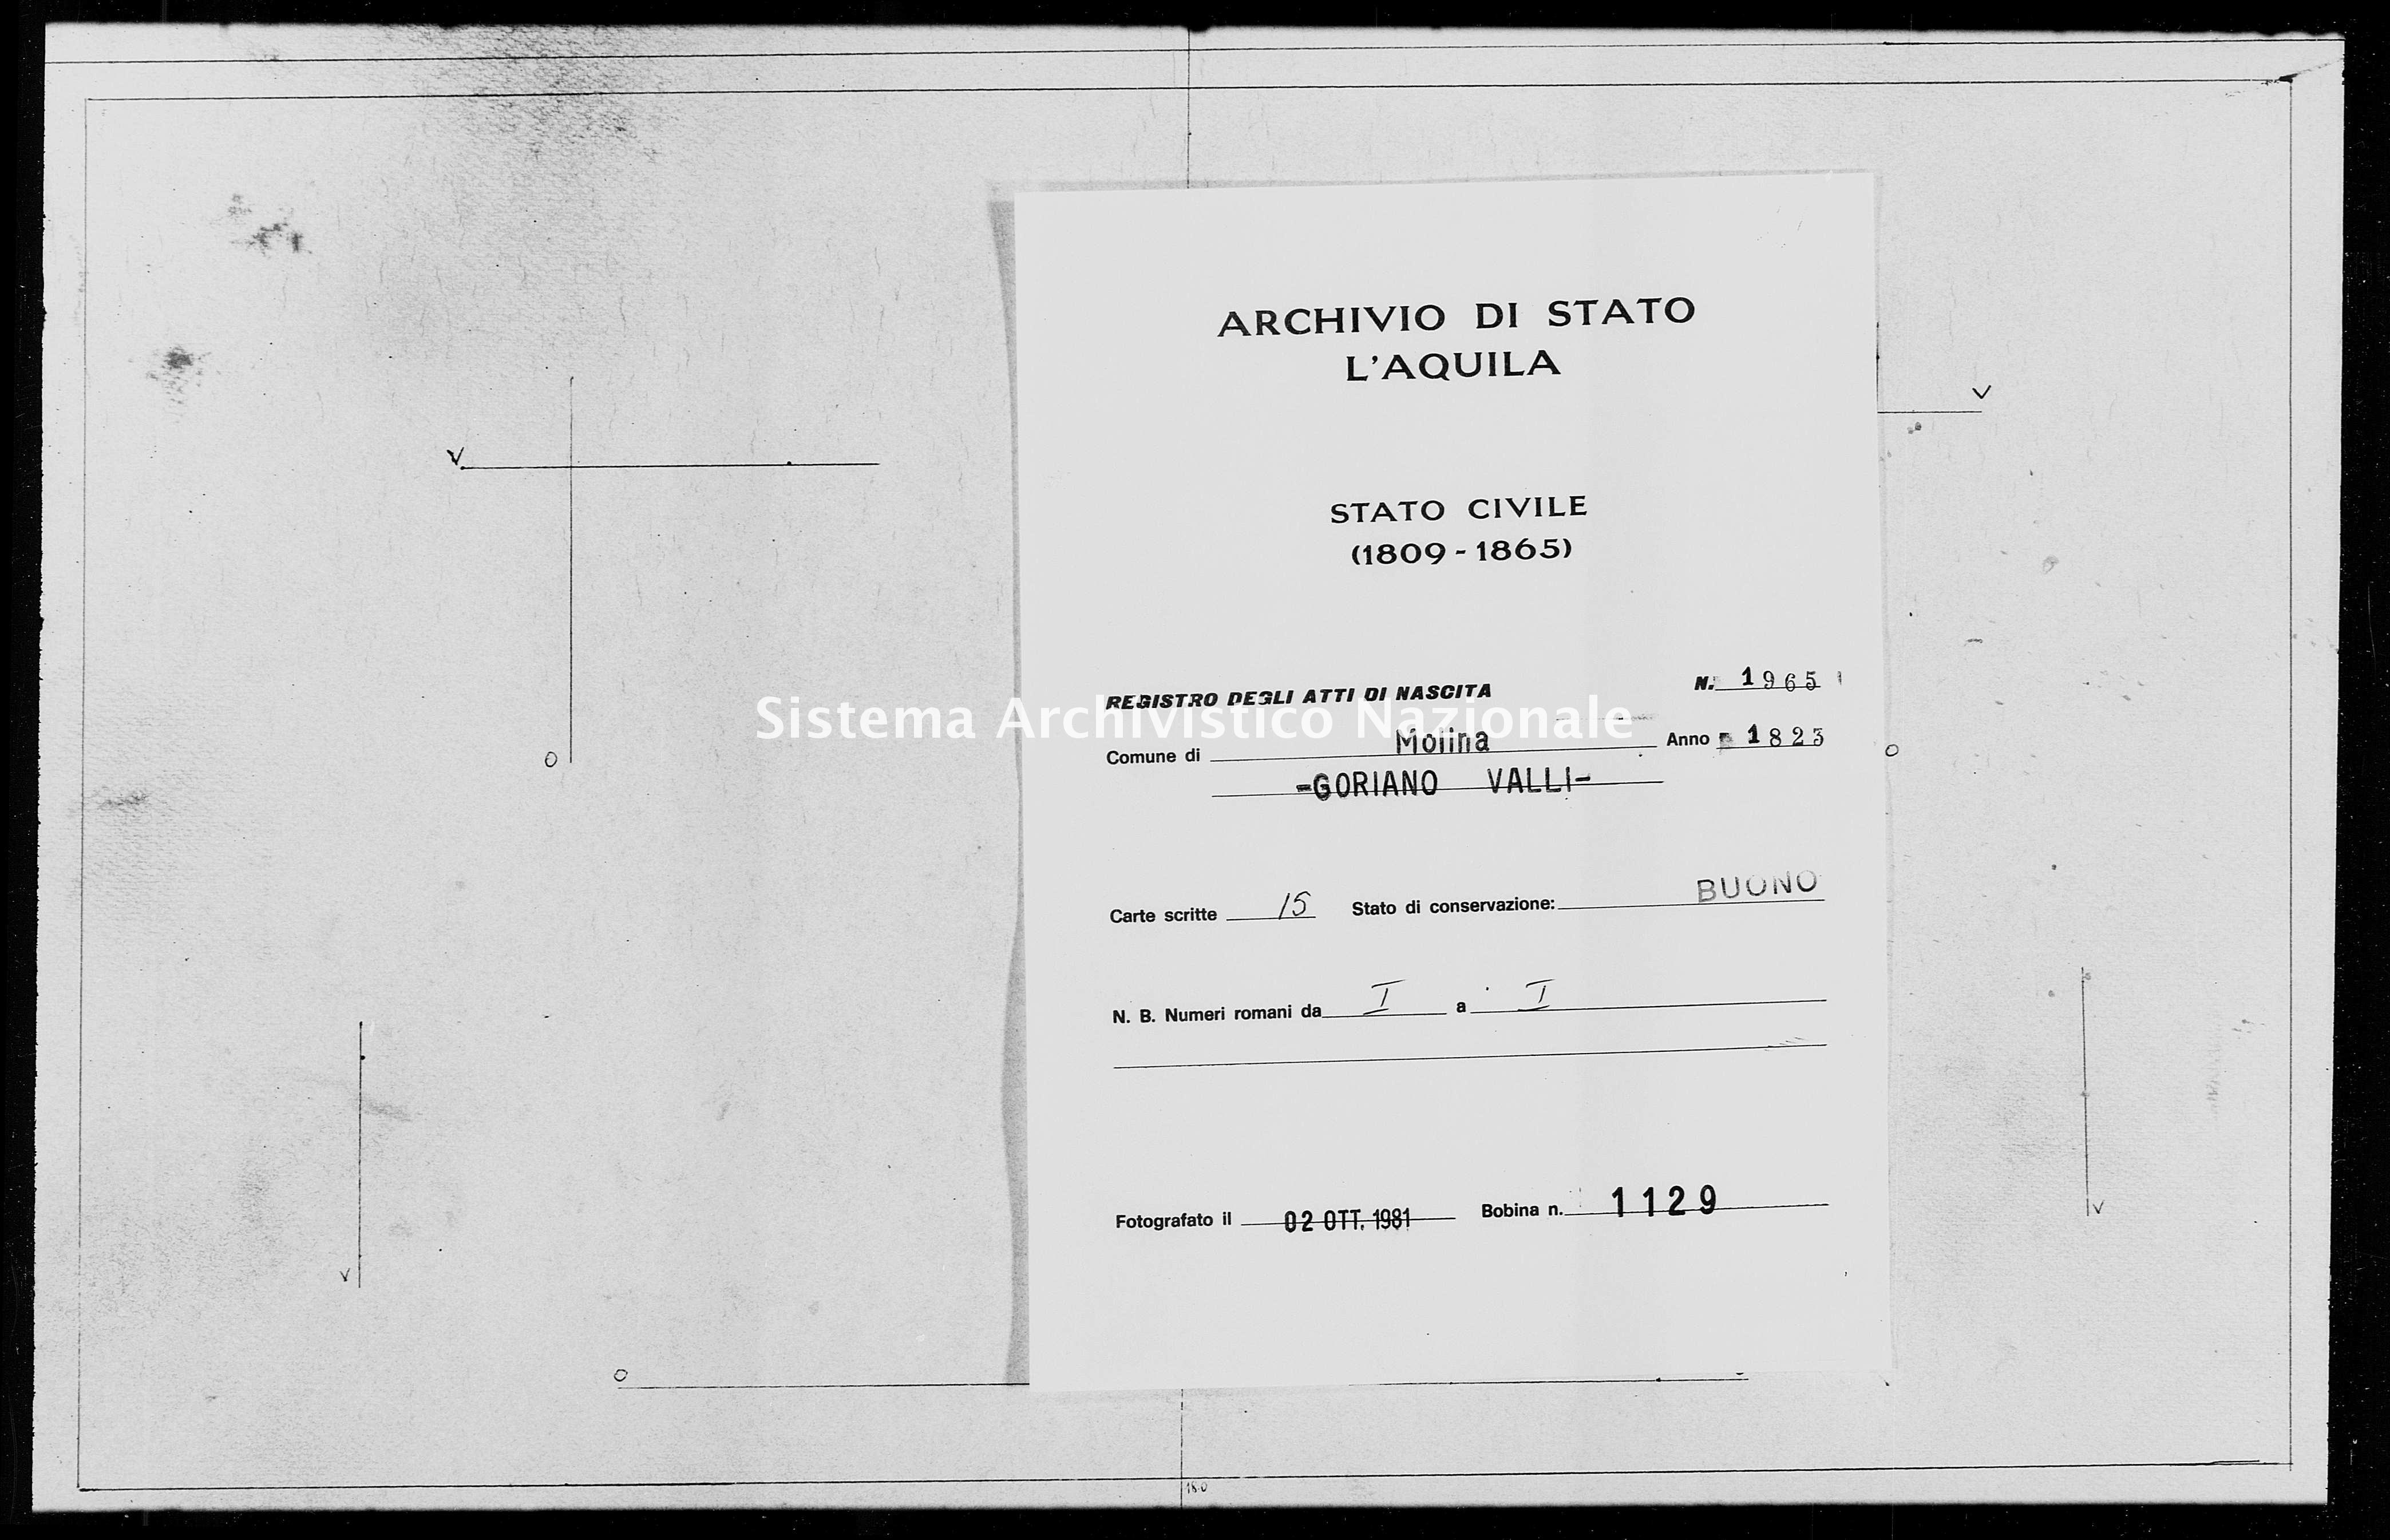 Archivio di stato di L'aquila - Stato civile della restaurazione - Molina Aterno - Nati - 1823 - 1965 -